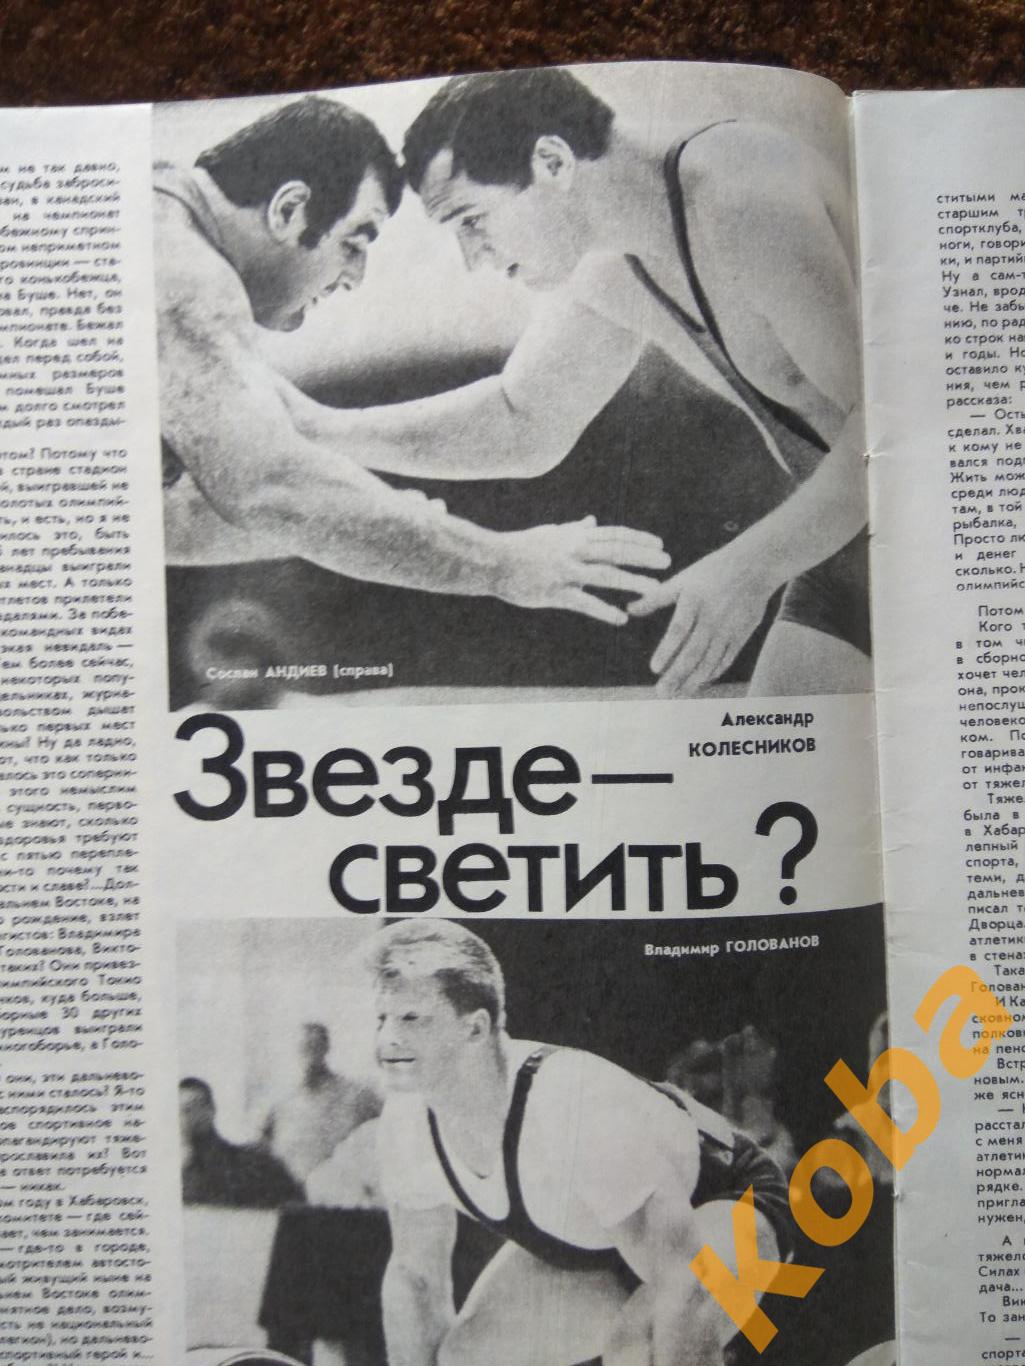 Борьба Штанга Футбол Яшин Блохин Волейбол Платонов Хоккей Пряхин ФиС 1989 №11 2